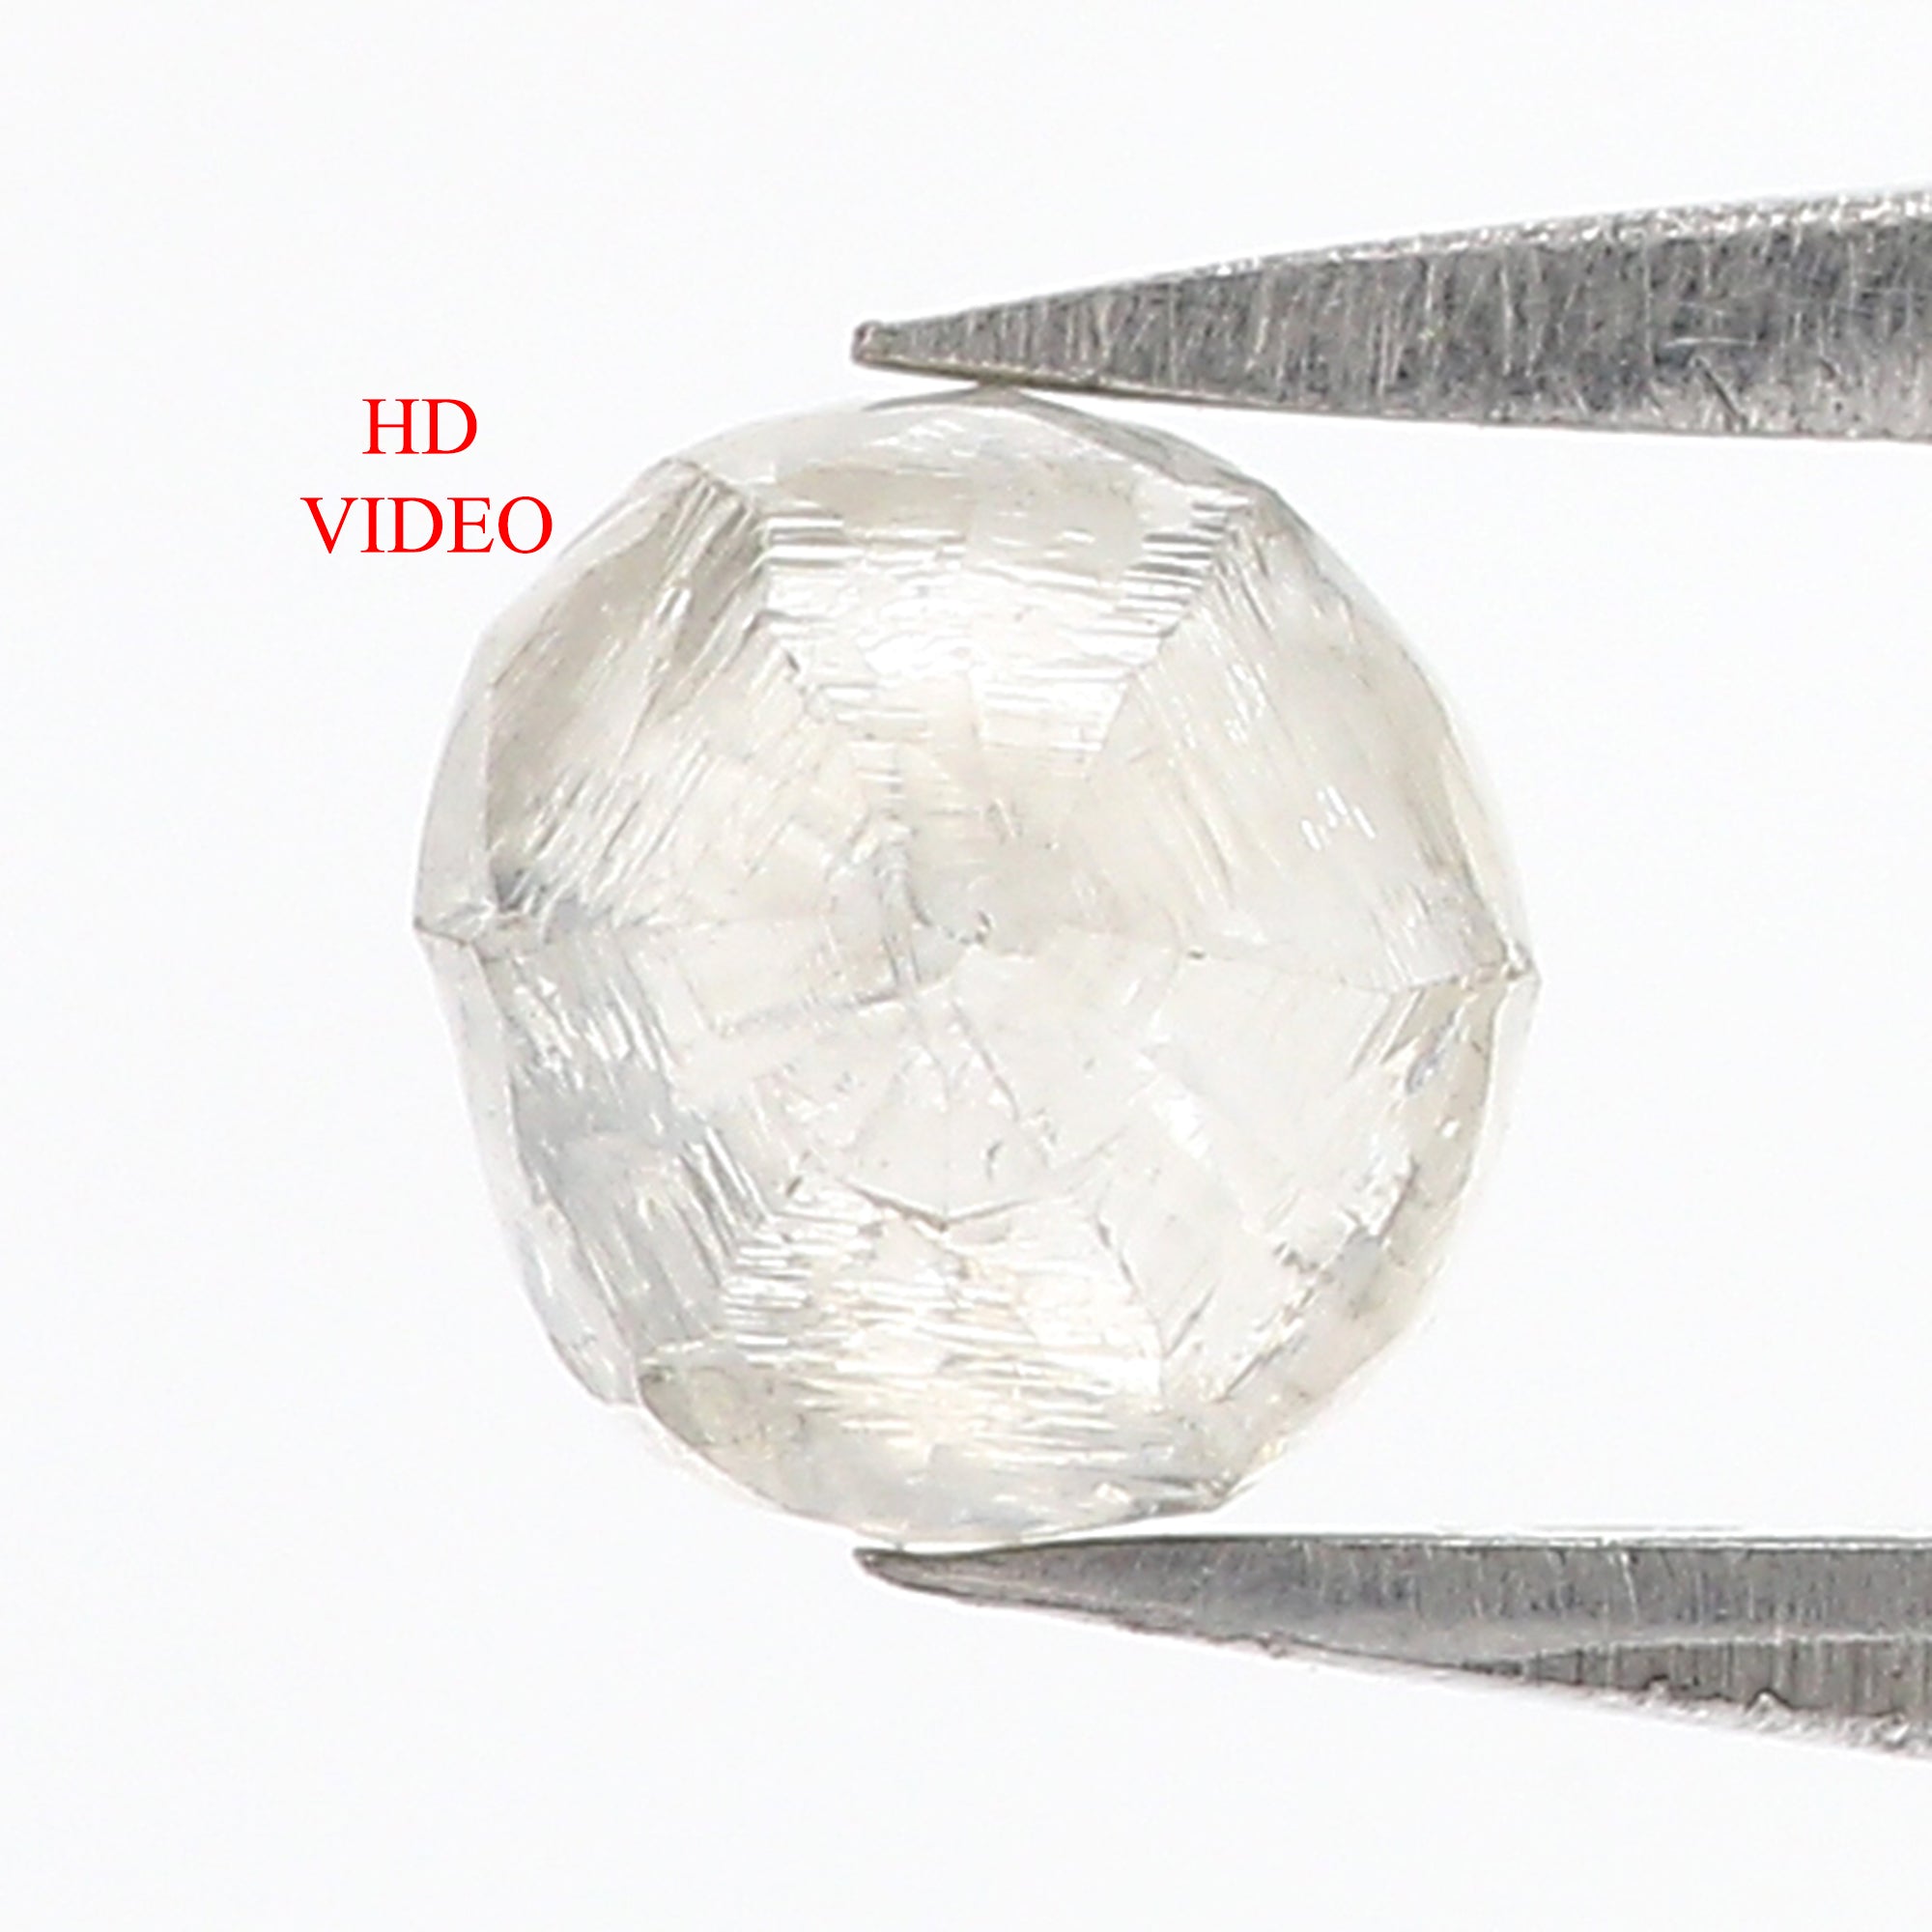 1.00 CT Natural Loose Rough Shape Diamond Grey Color Rough Diamond 5.75 MM Natural Loose Grey Diamond Rough Irregular Cut Diamond QL3121